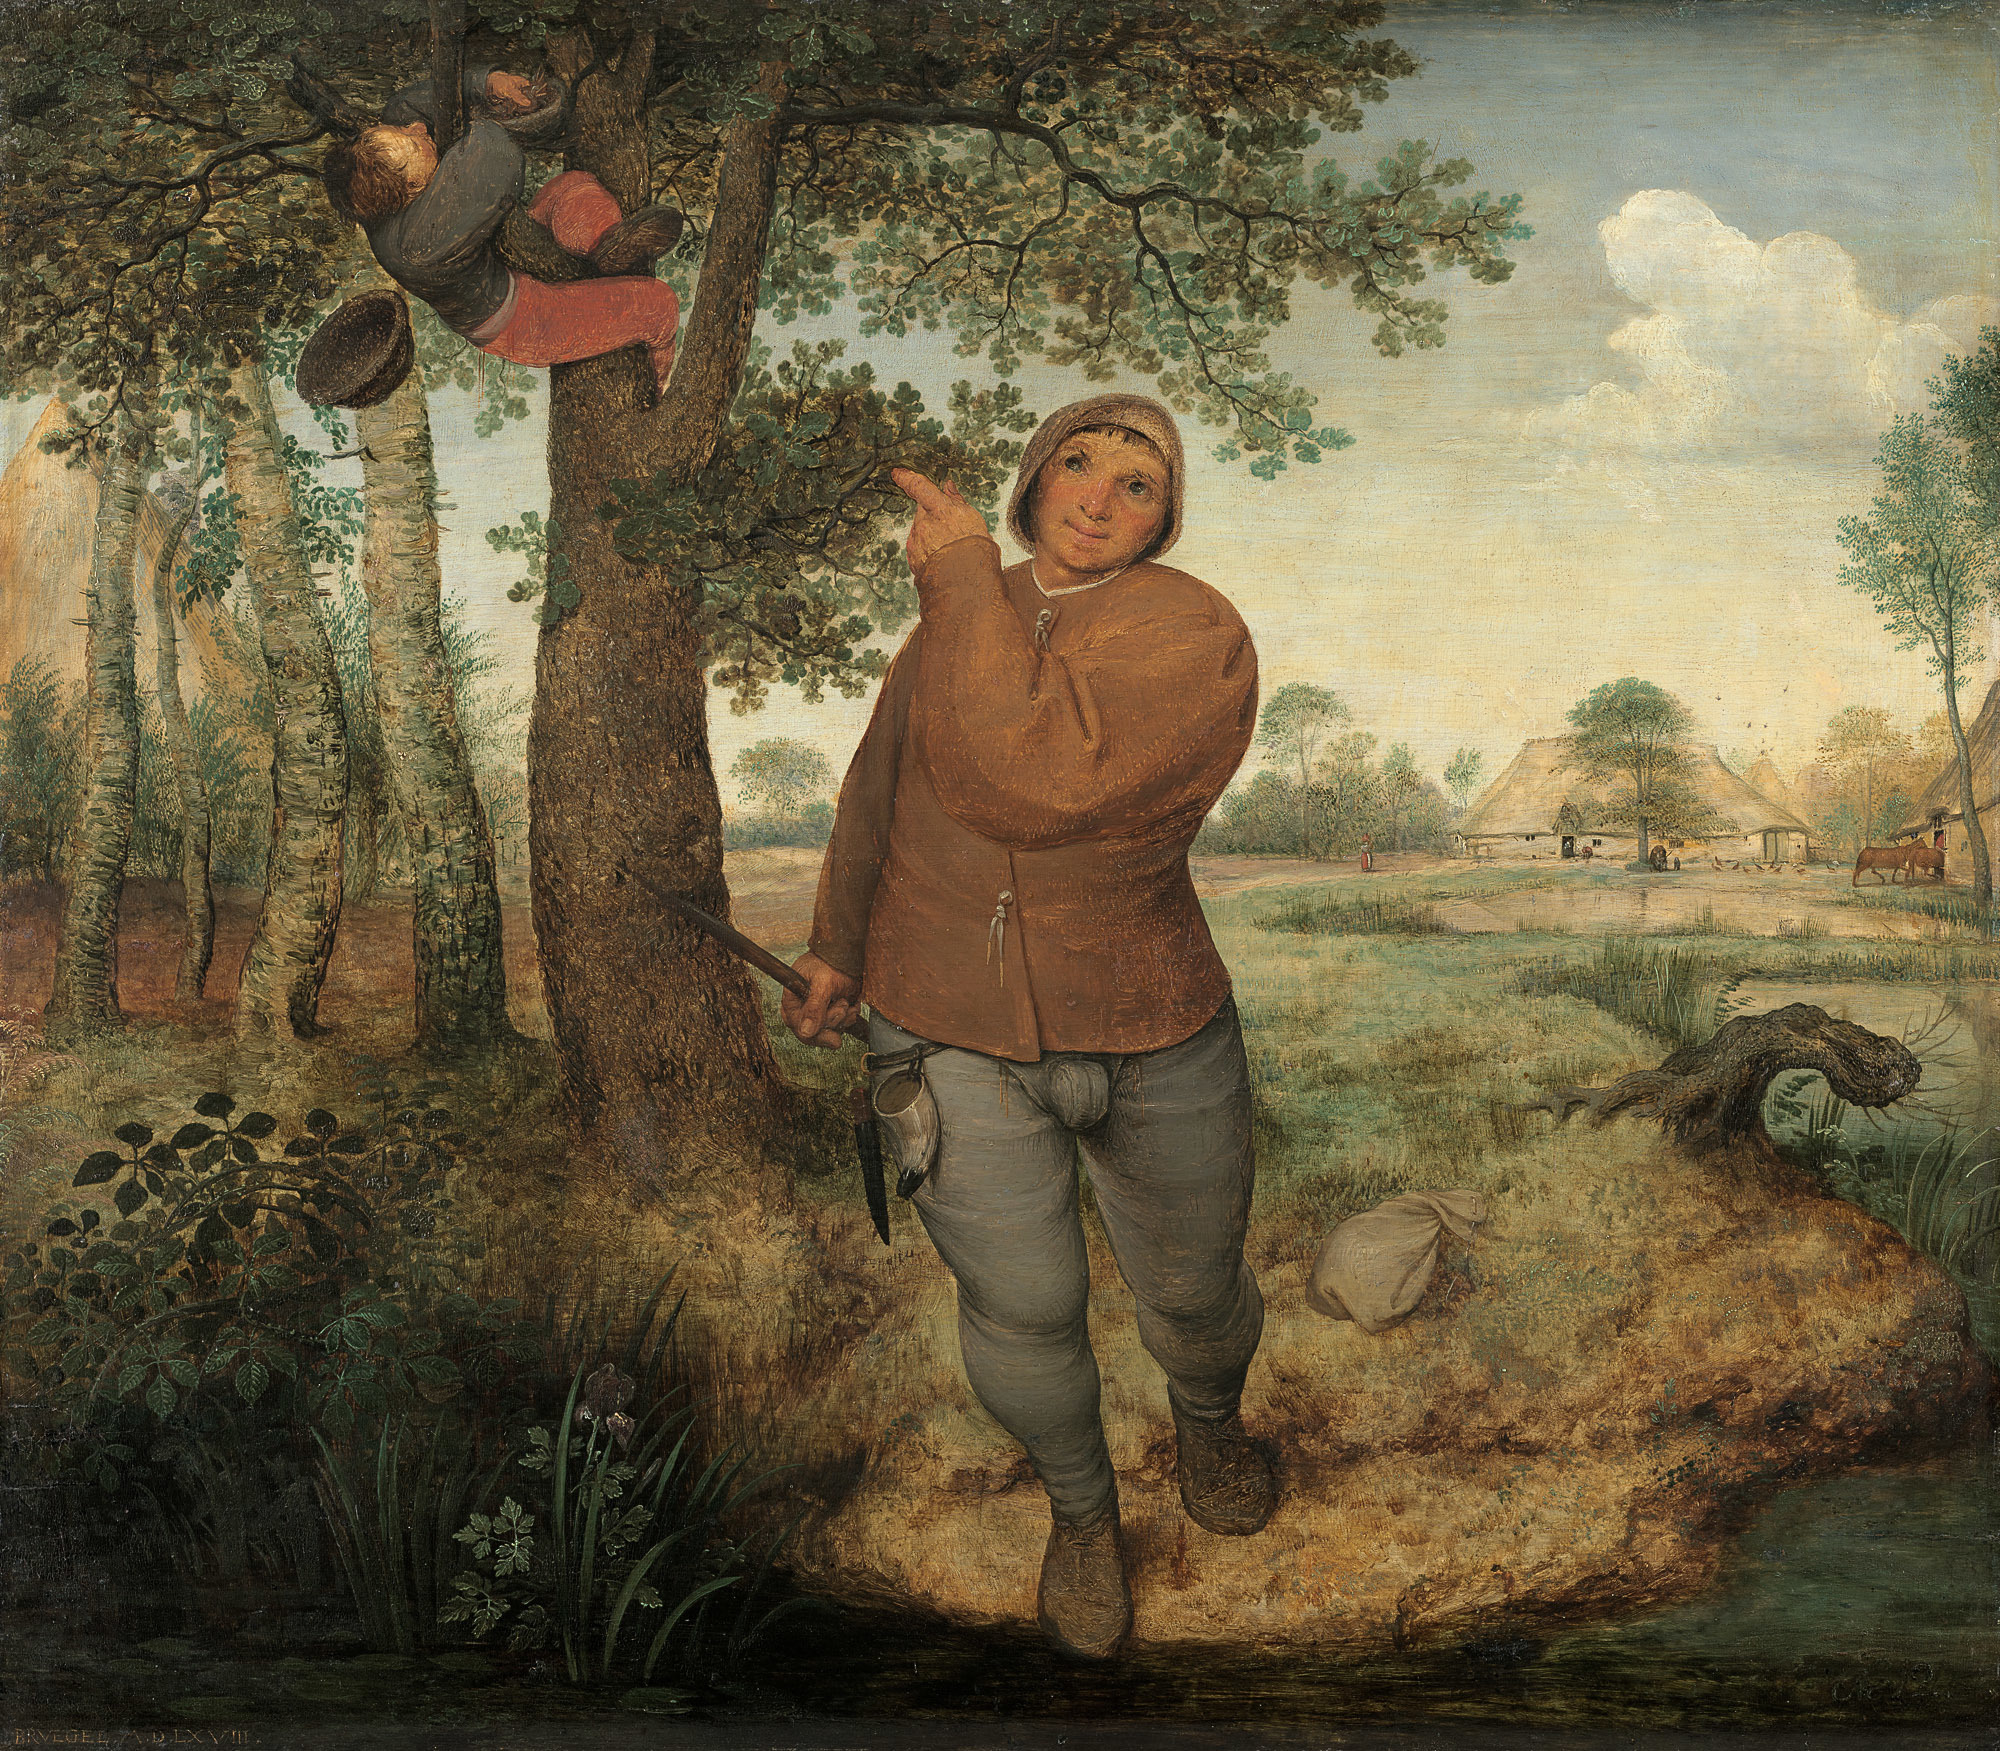 掏鸟巢的人 by 老彼得· 勃鲁盖尔 - 1568 - 59.3 × 68.3 厘米 艺术史博物馆